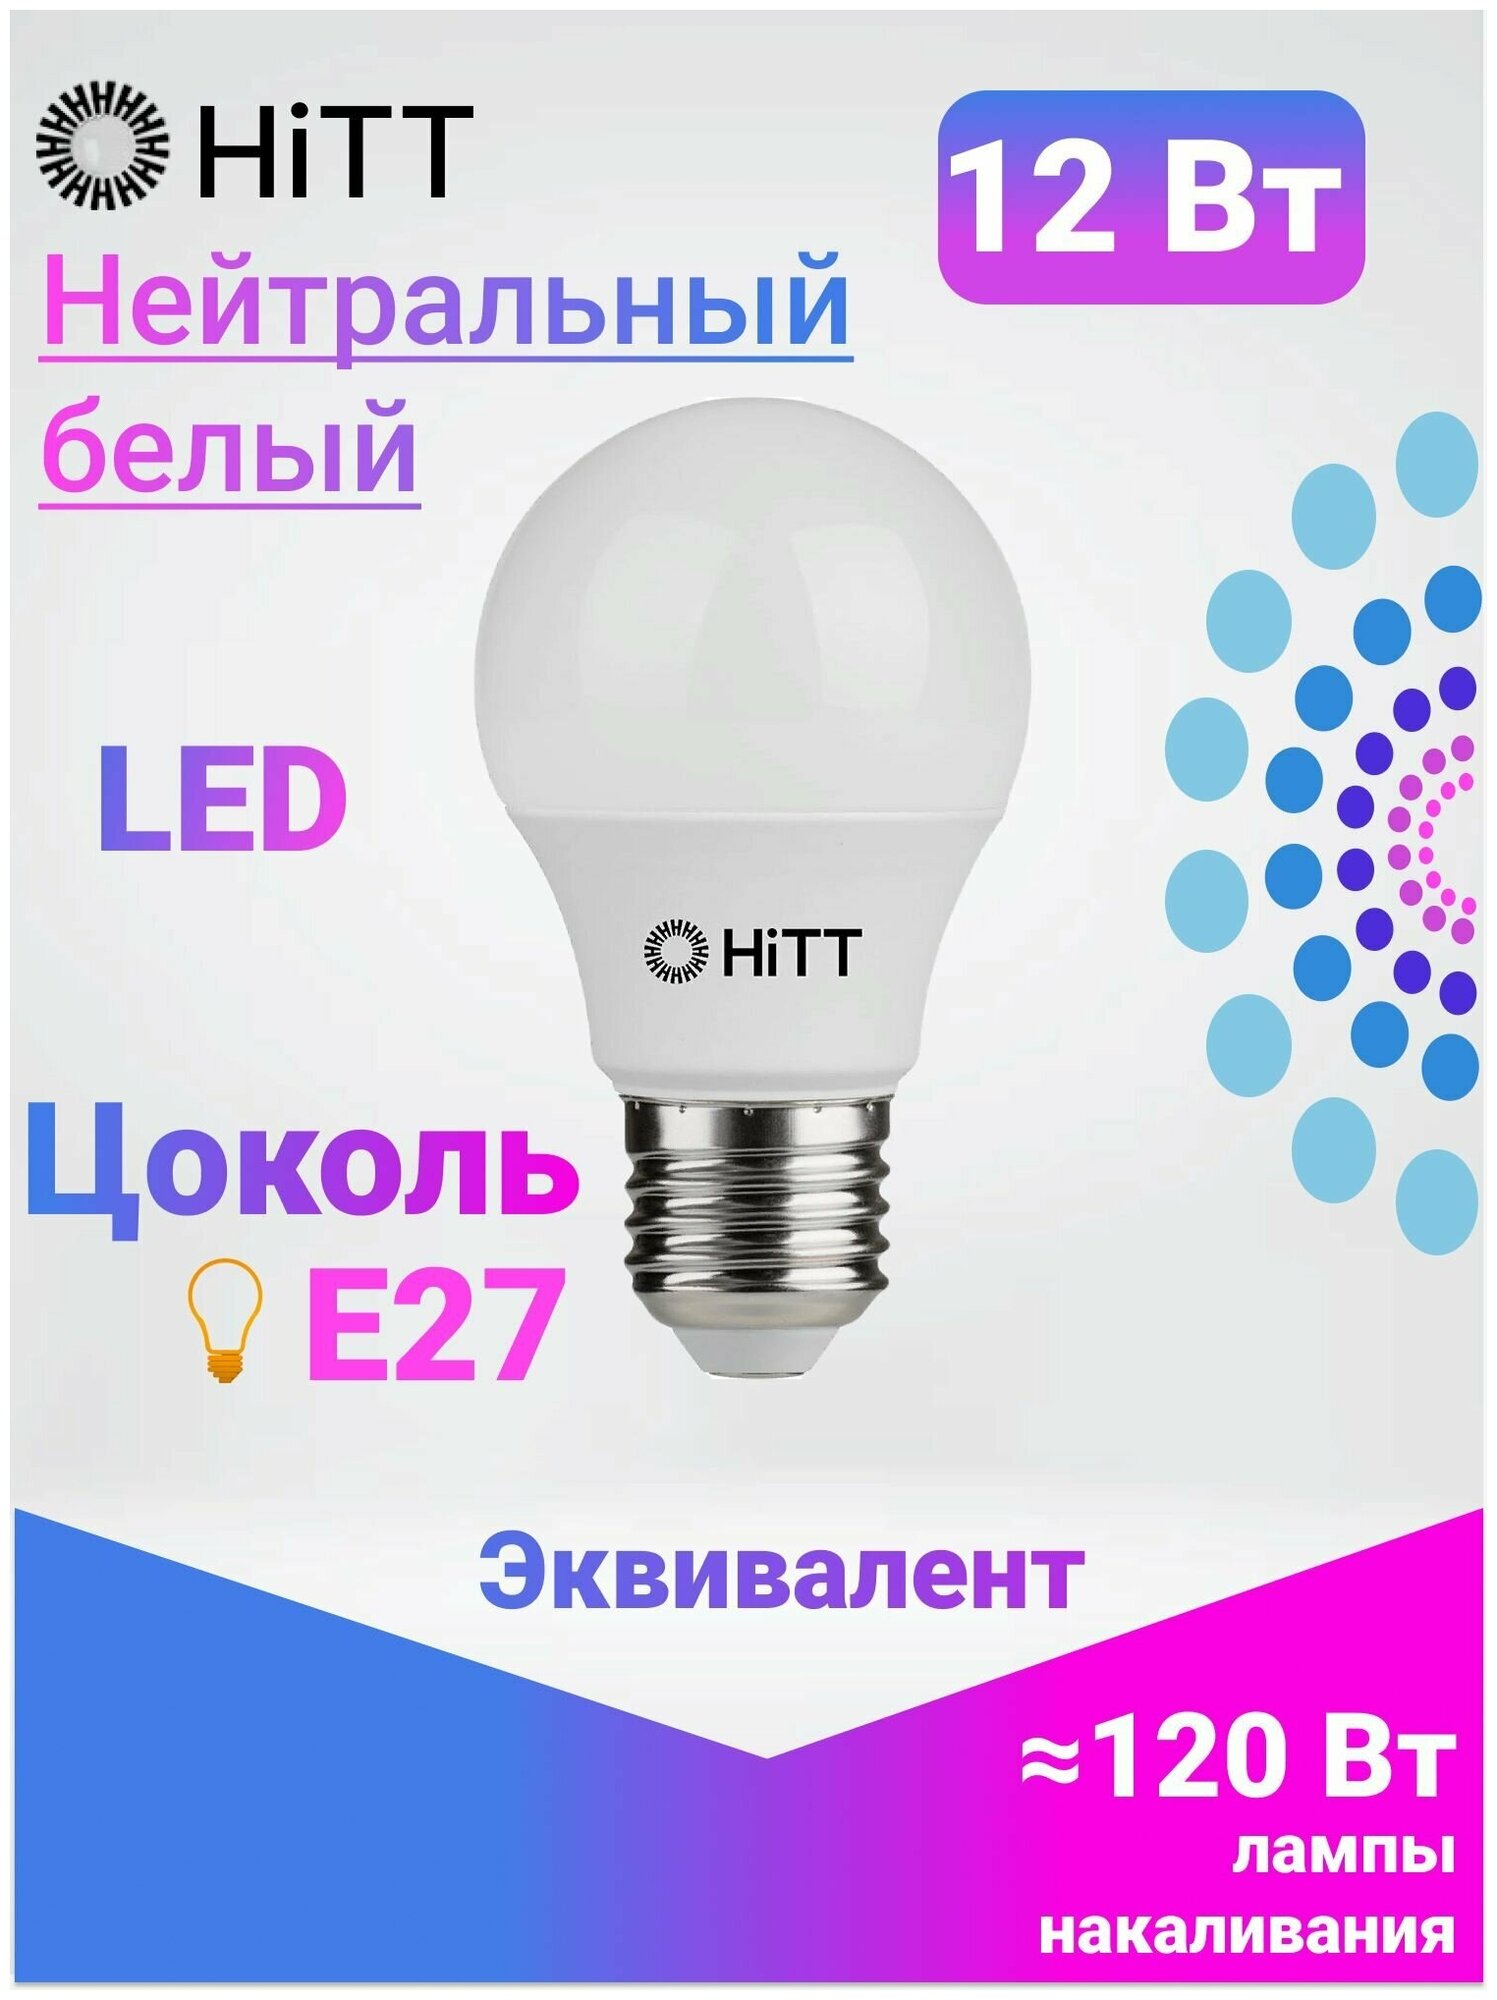 Энергоэффективная светодиодная лампа HiTT 12Вт E27 4000к